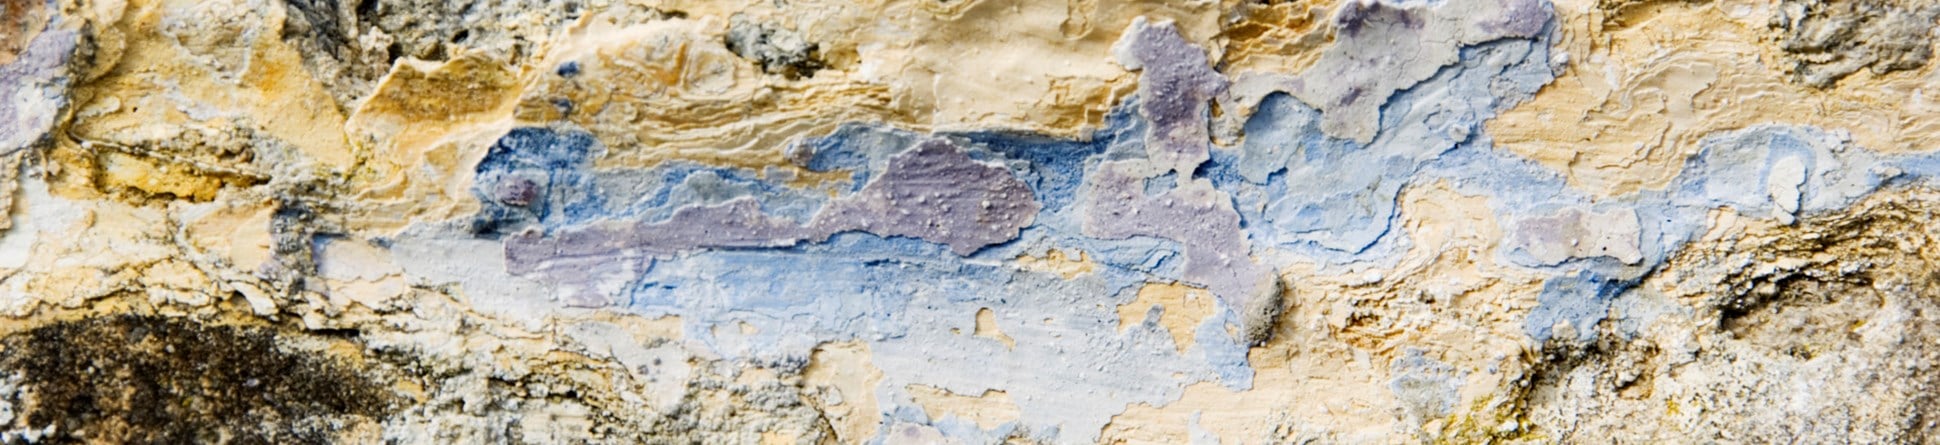 Close-up image of a limewashed wall.